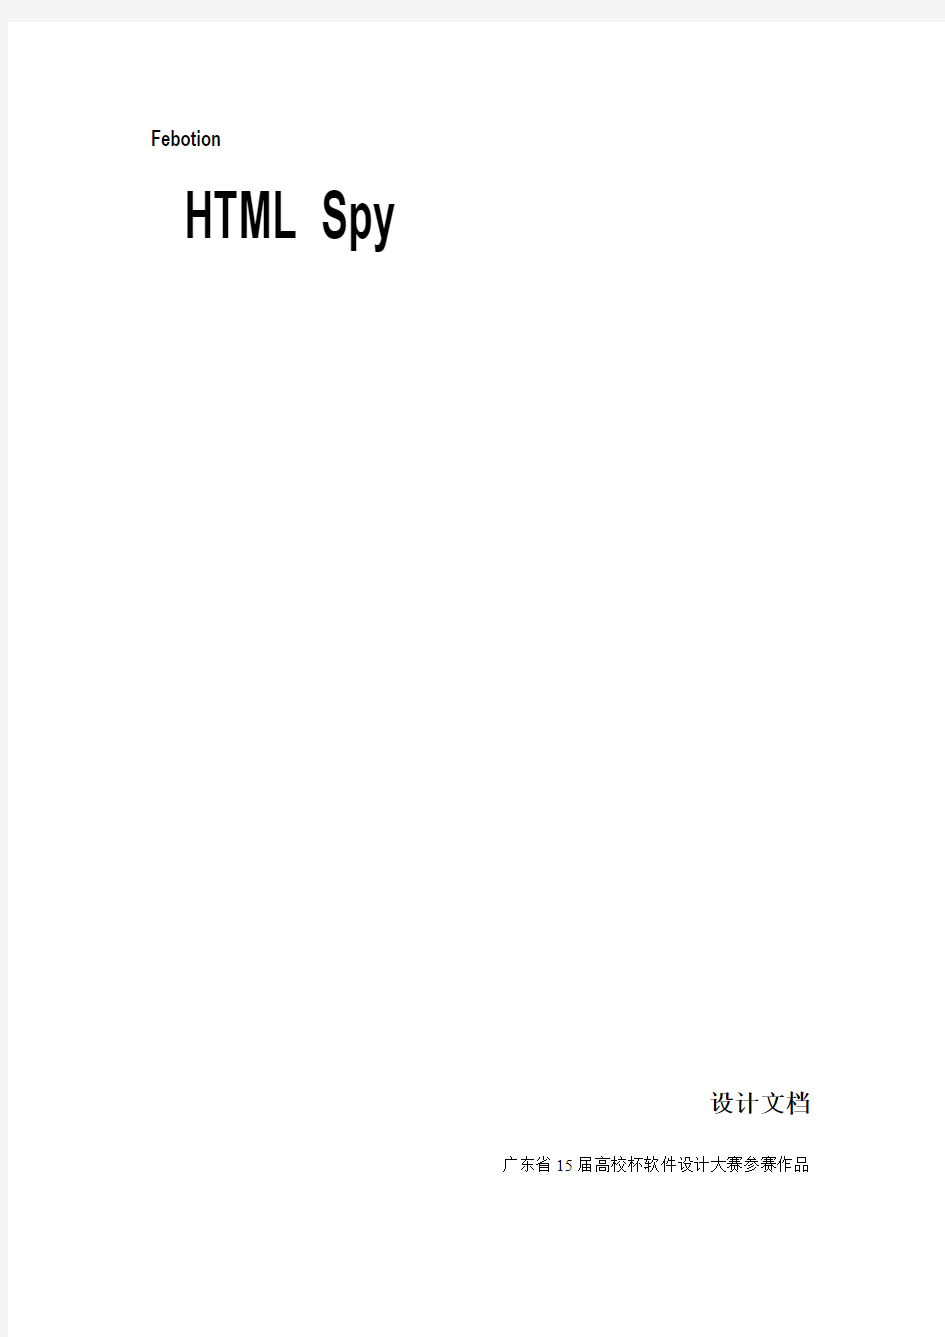 Febotion HTML Spy 设计文档